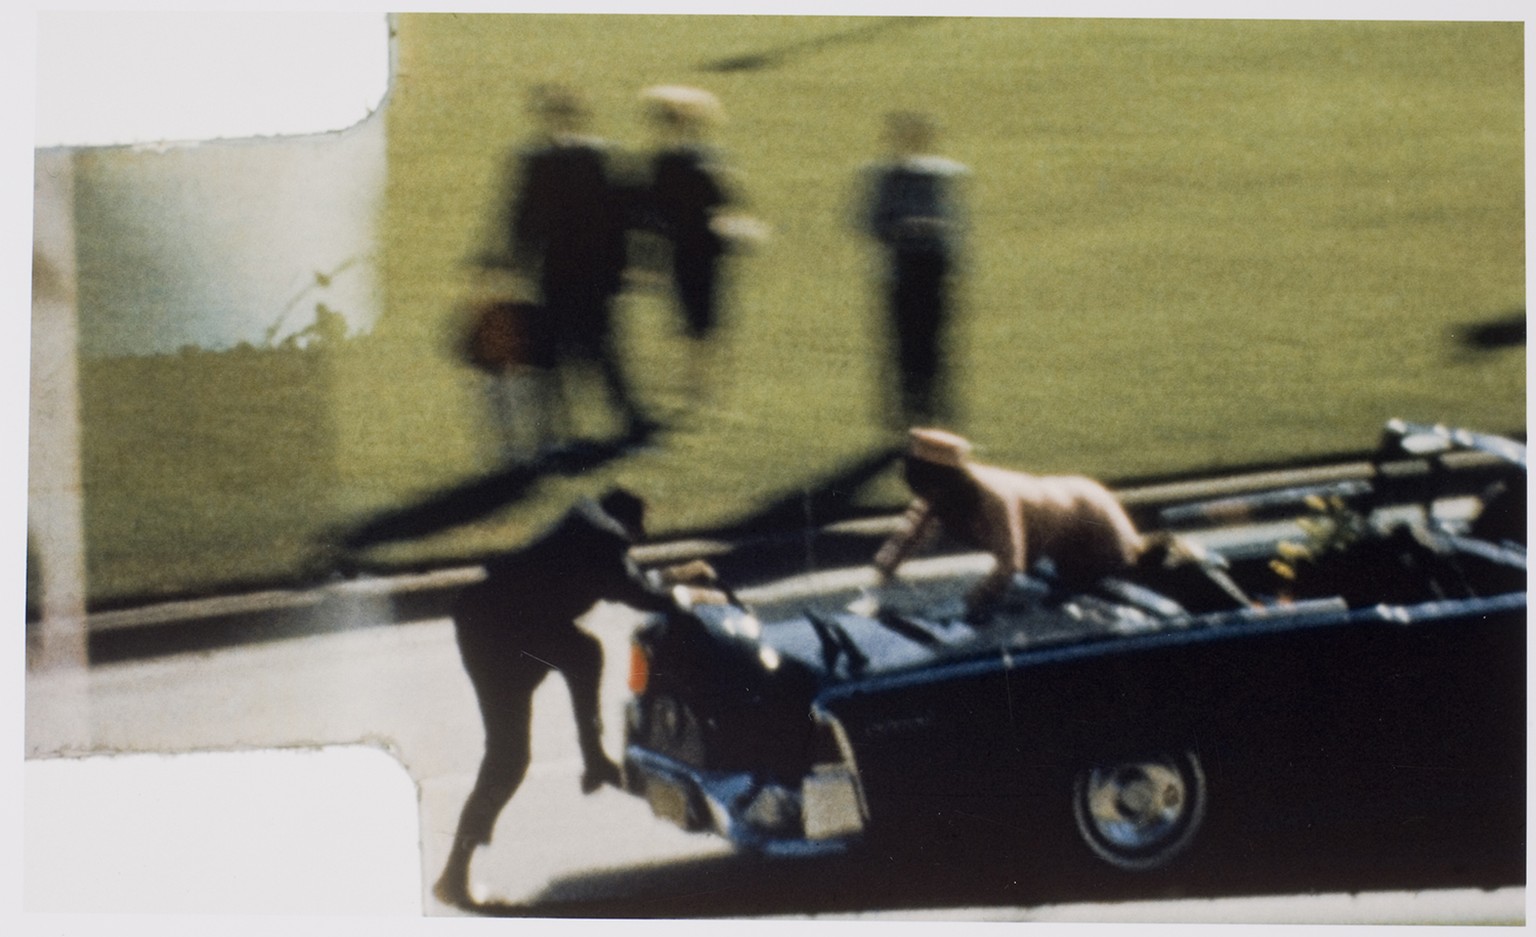 Am 22. November 1963 wird der amerikanische Präsident John F. Kennedy in Dallas erschossen – um die Ermordung ranken sich bis heute Gerüchte.